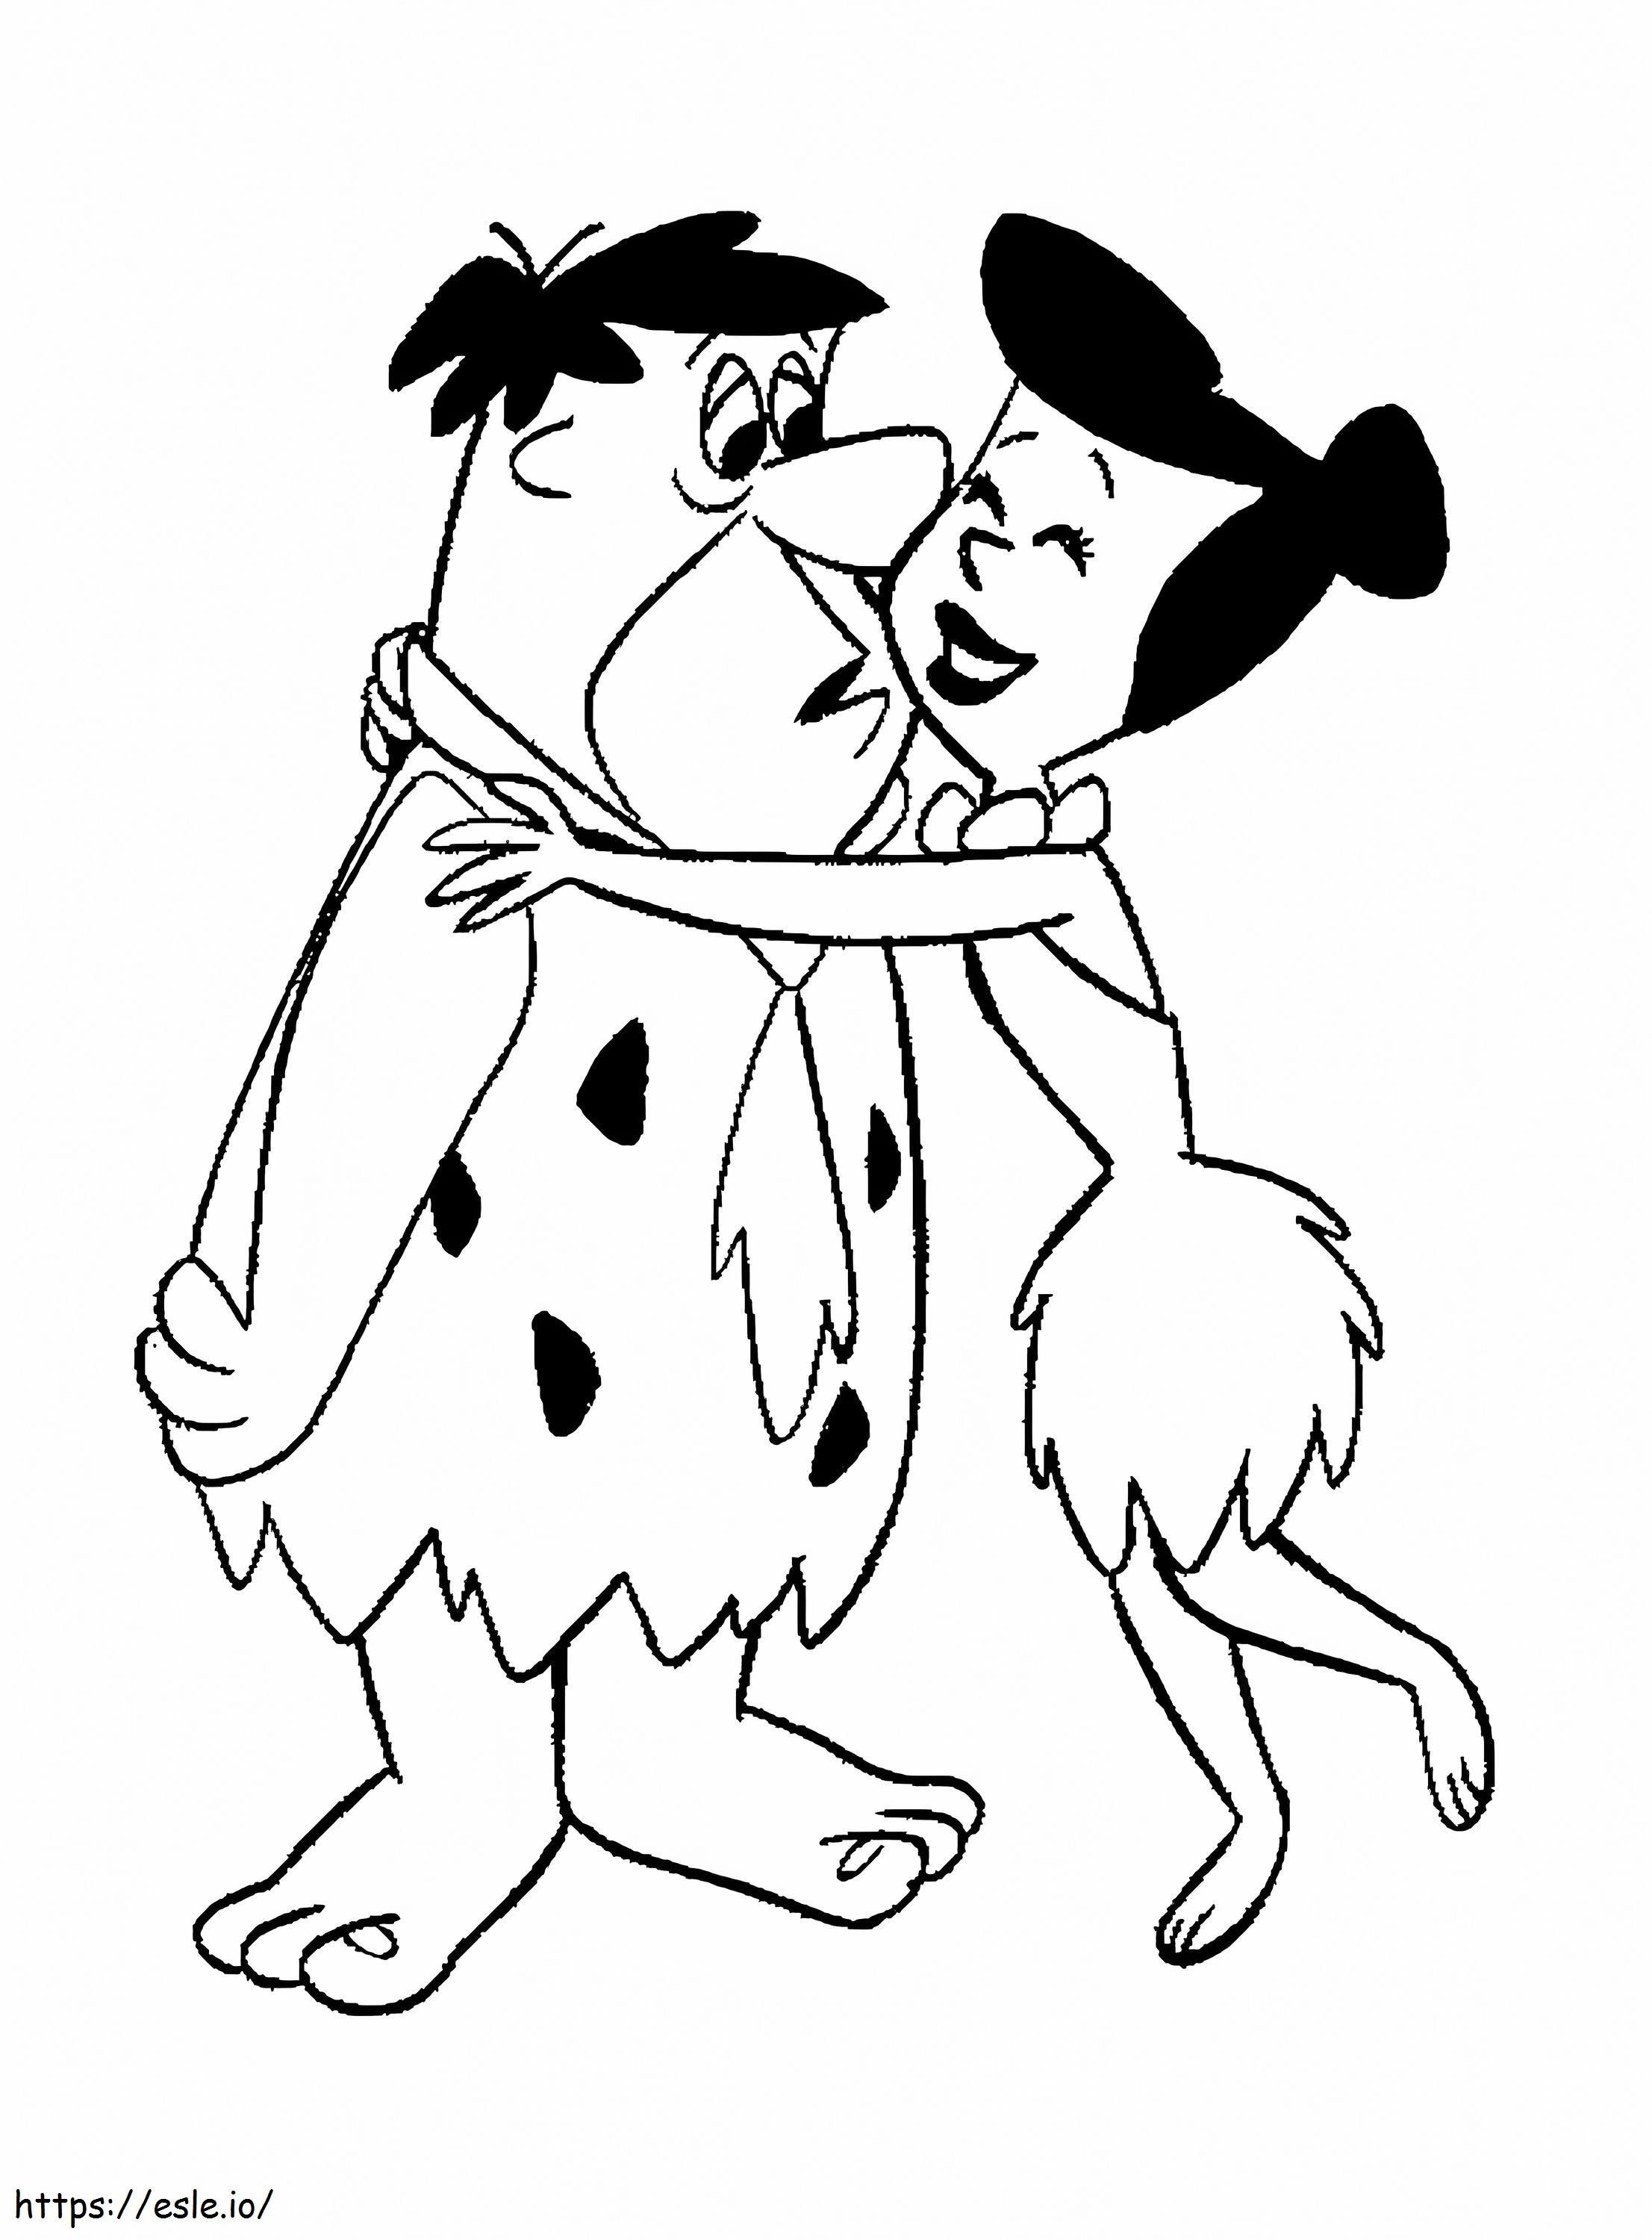 Fred și Wilma de colorat